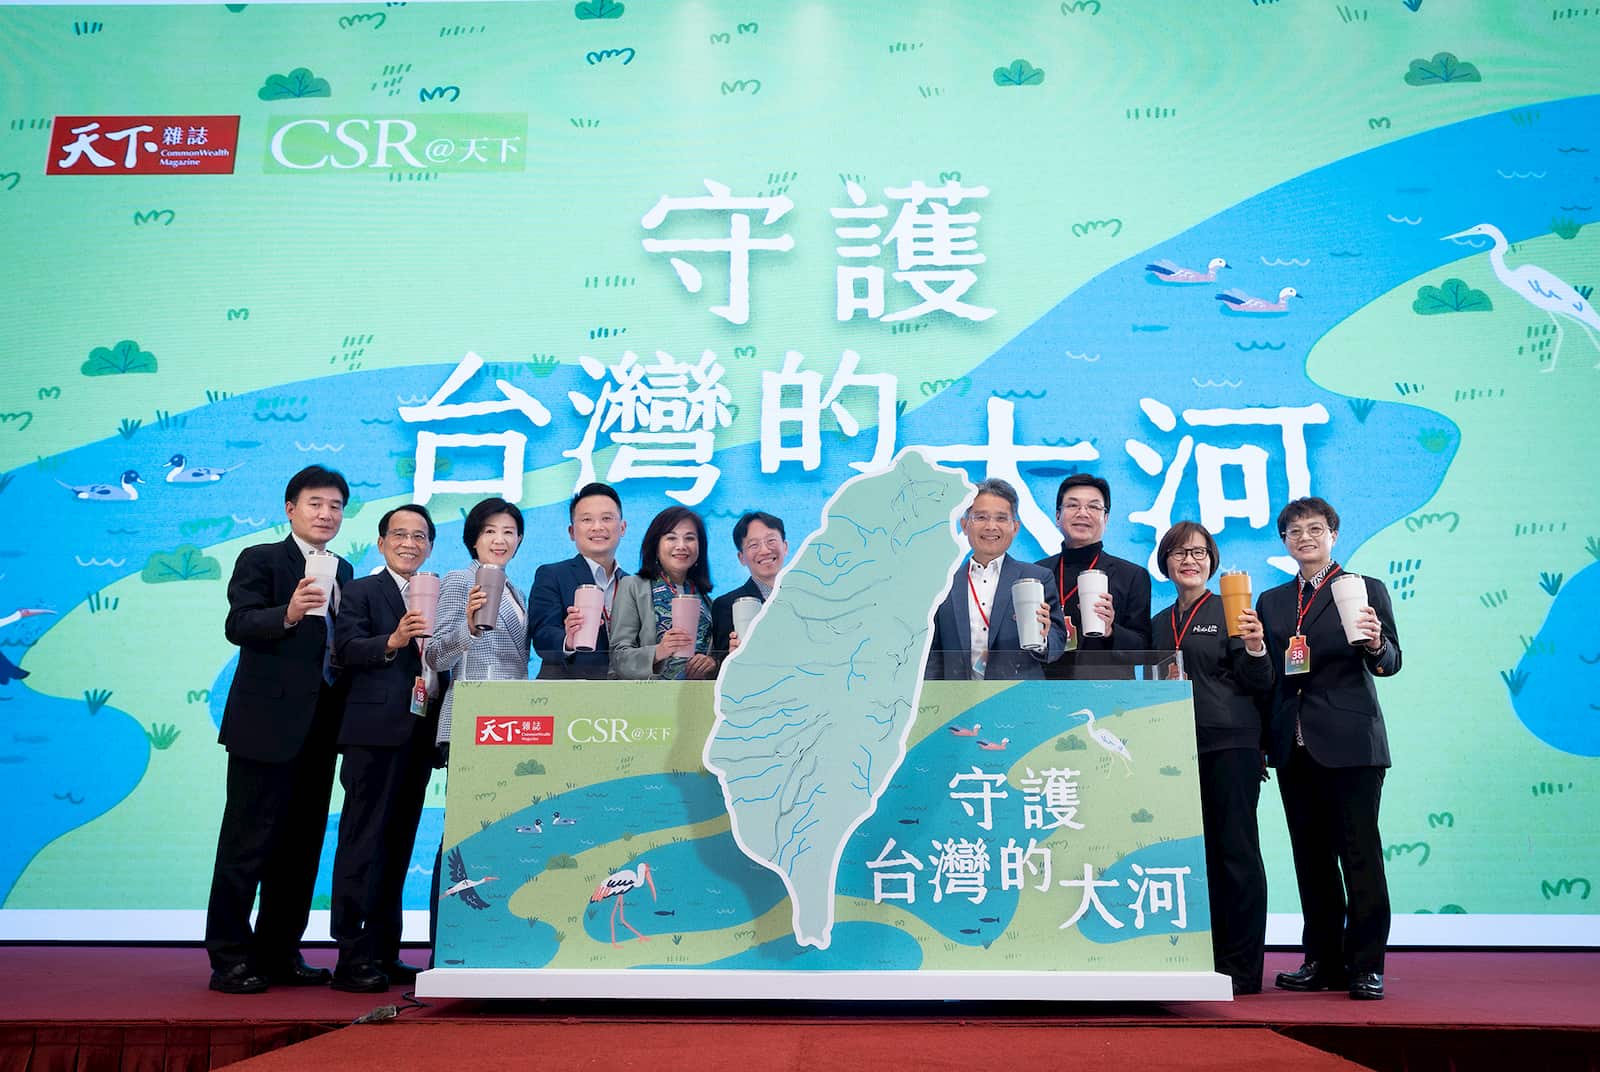 桃園市政府蘇俊賓副市長參加SDGs國際論壇-大河宣言儀式